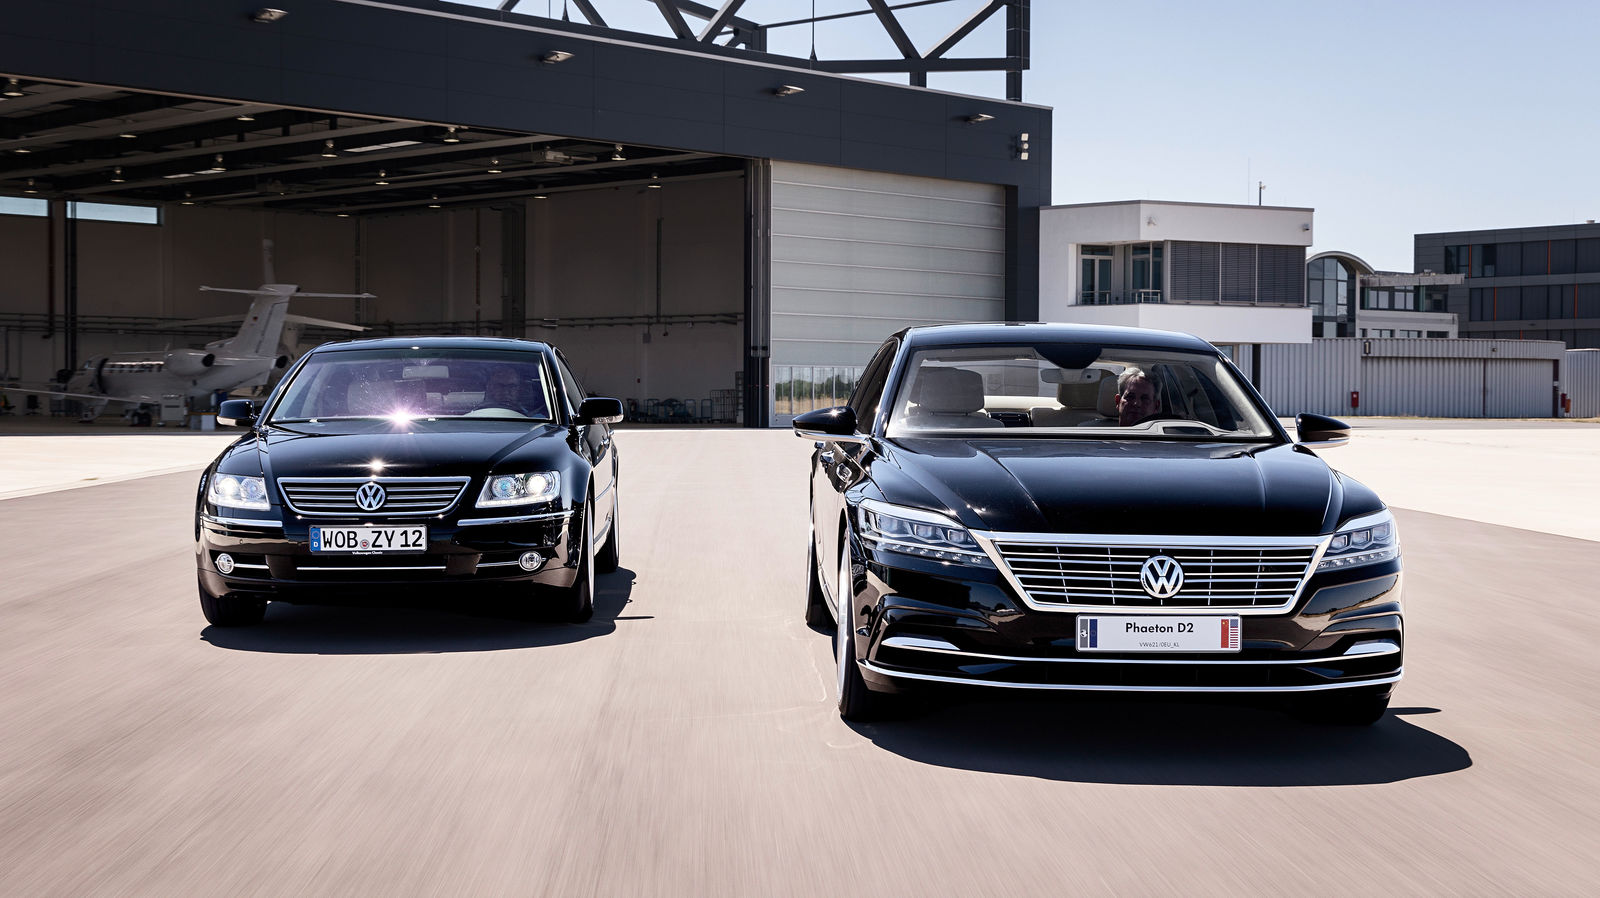 Volkswagen Phaeton und Volkswagen Phaeton D2 (Konzeptfahrzeug)